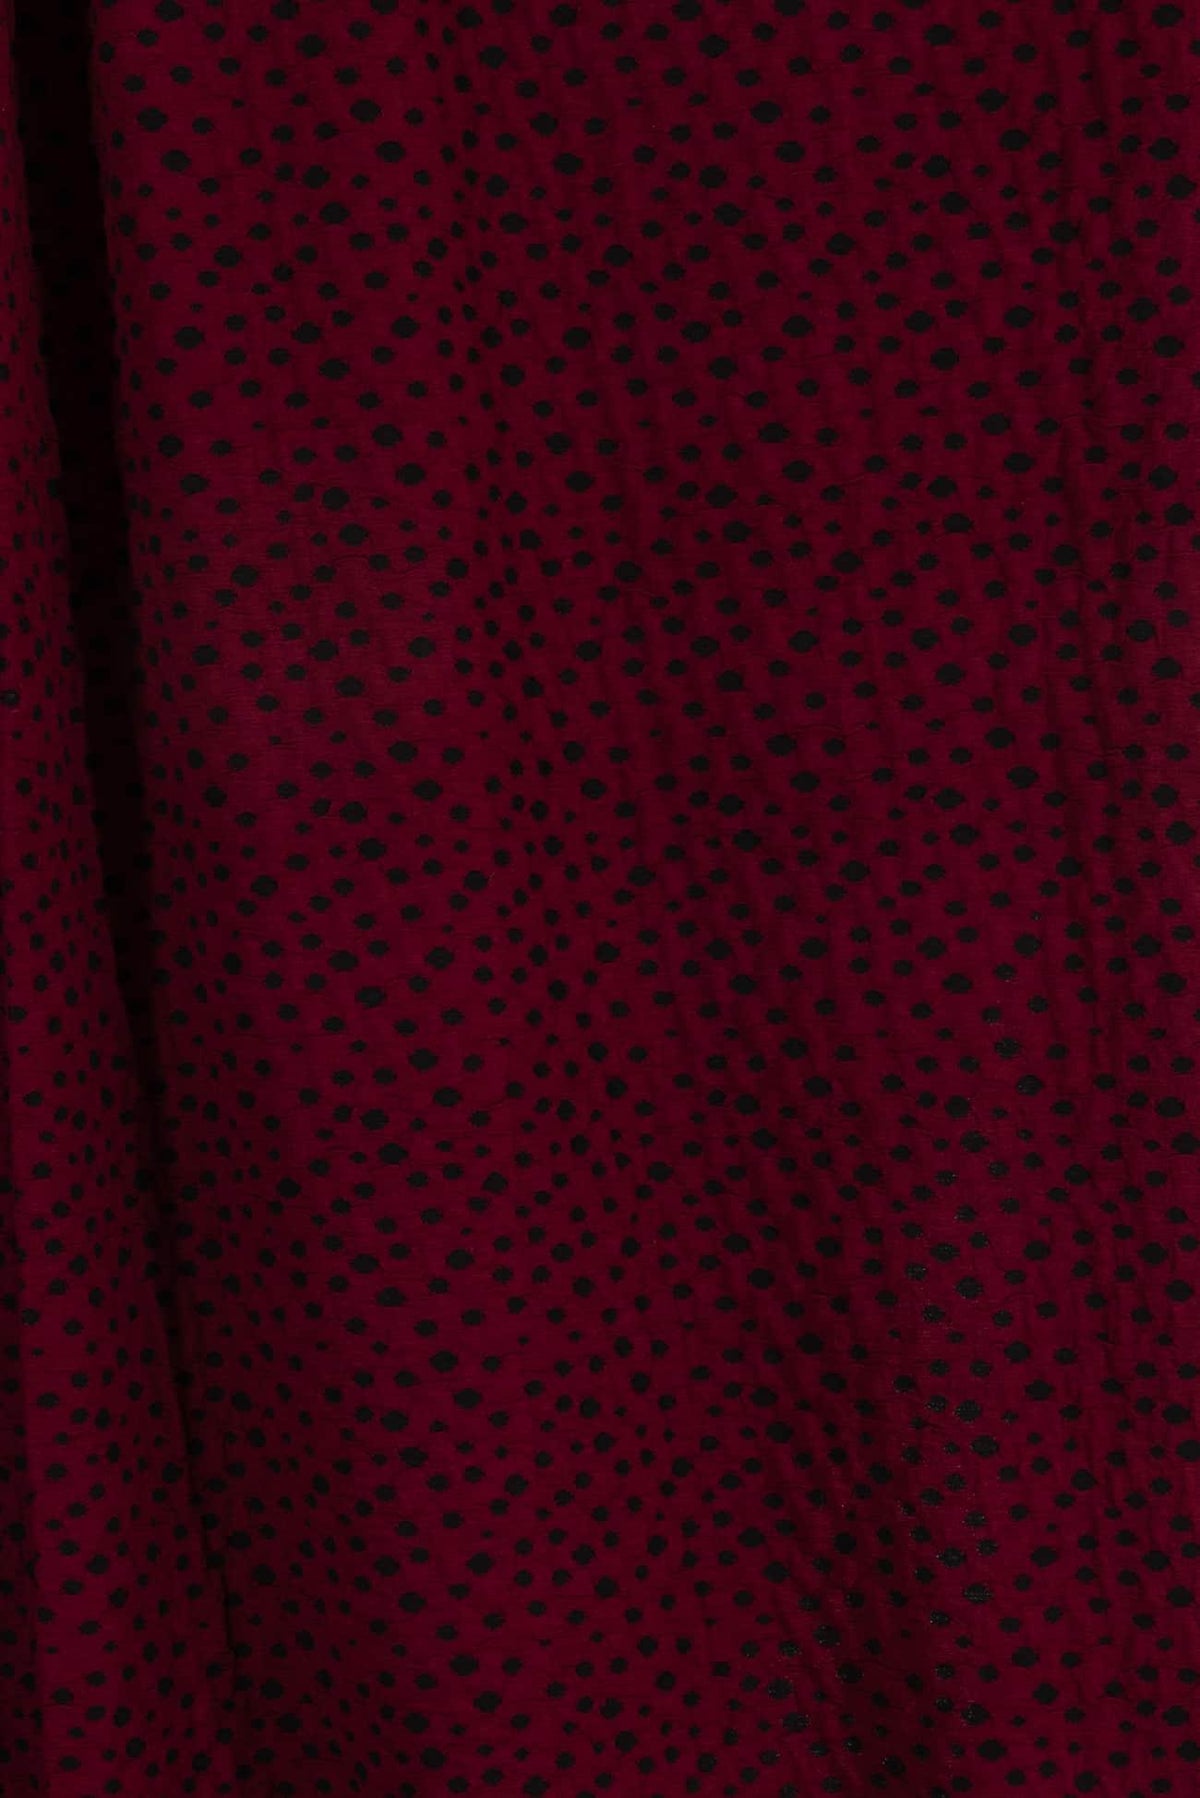 Pinot Dots Italian Knit - Marcy Tilton Fabrics